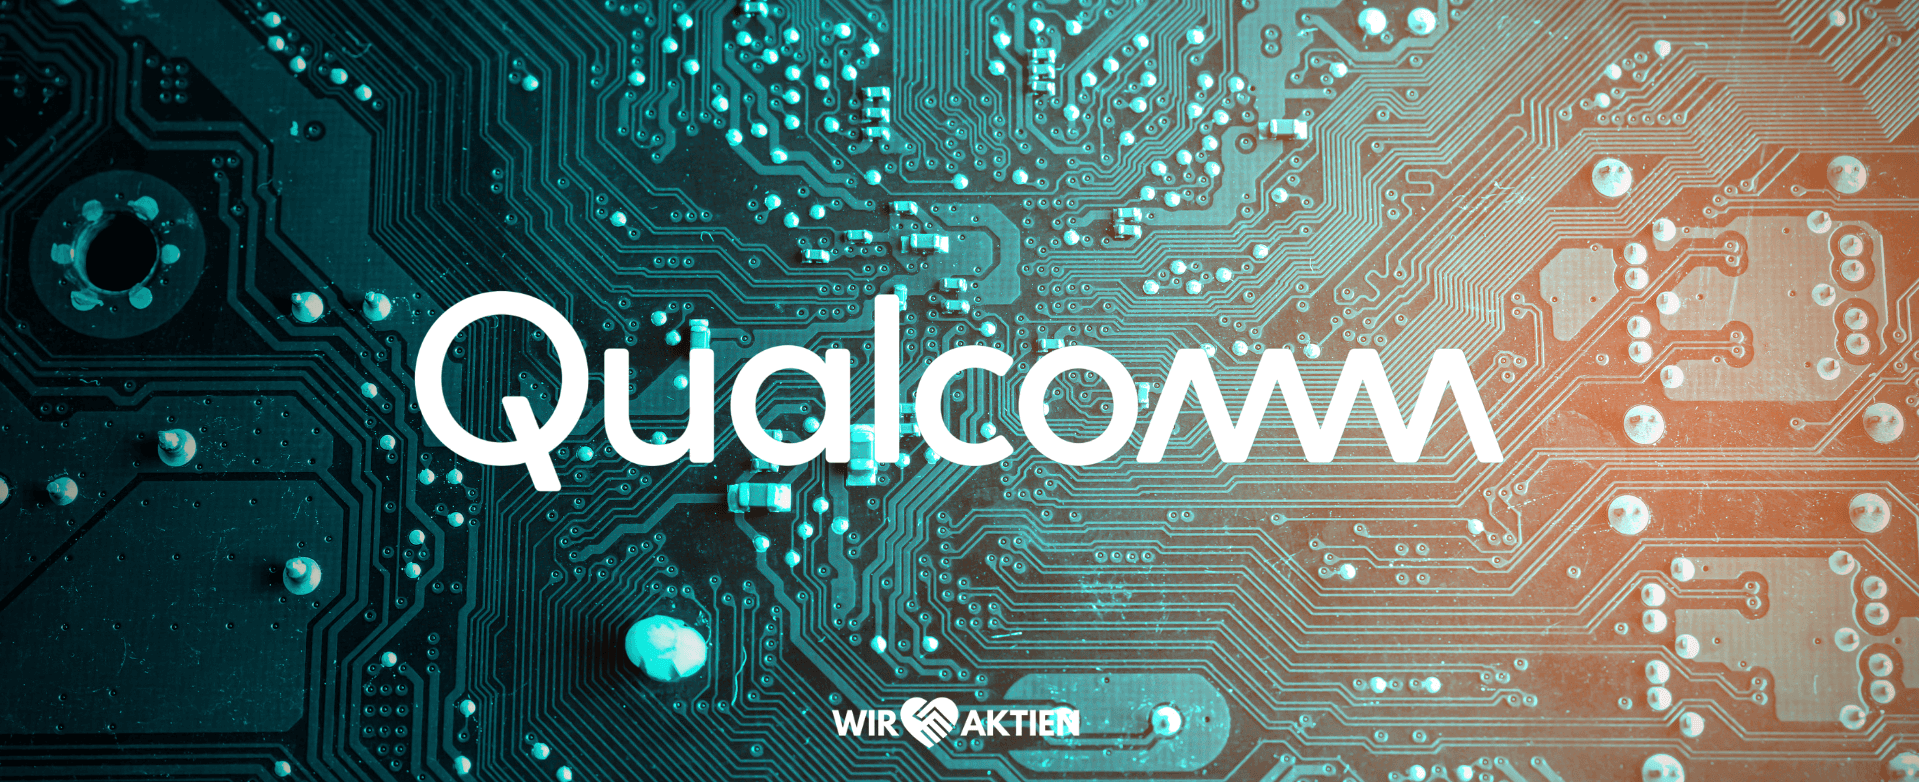 Qualcomm Aktie Analyse – 5G, statt 2G oder 3G